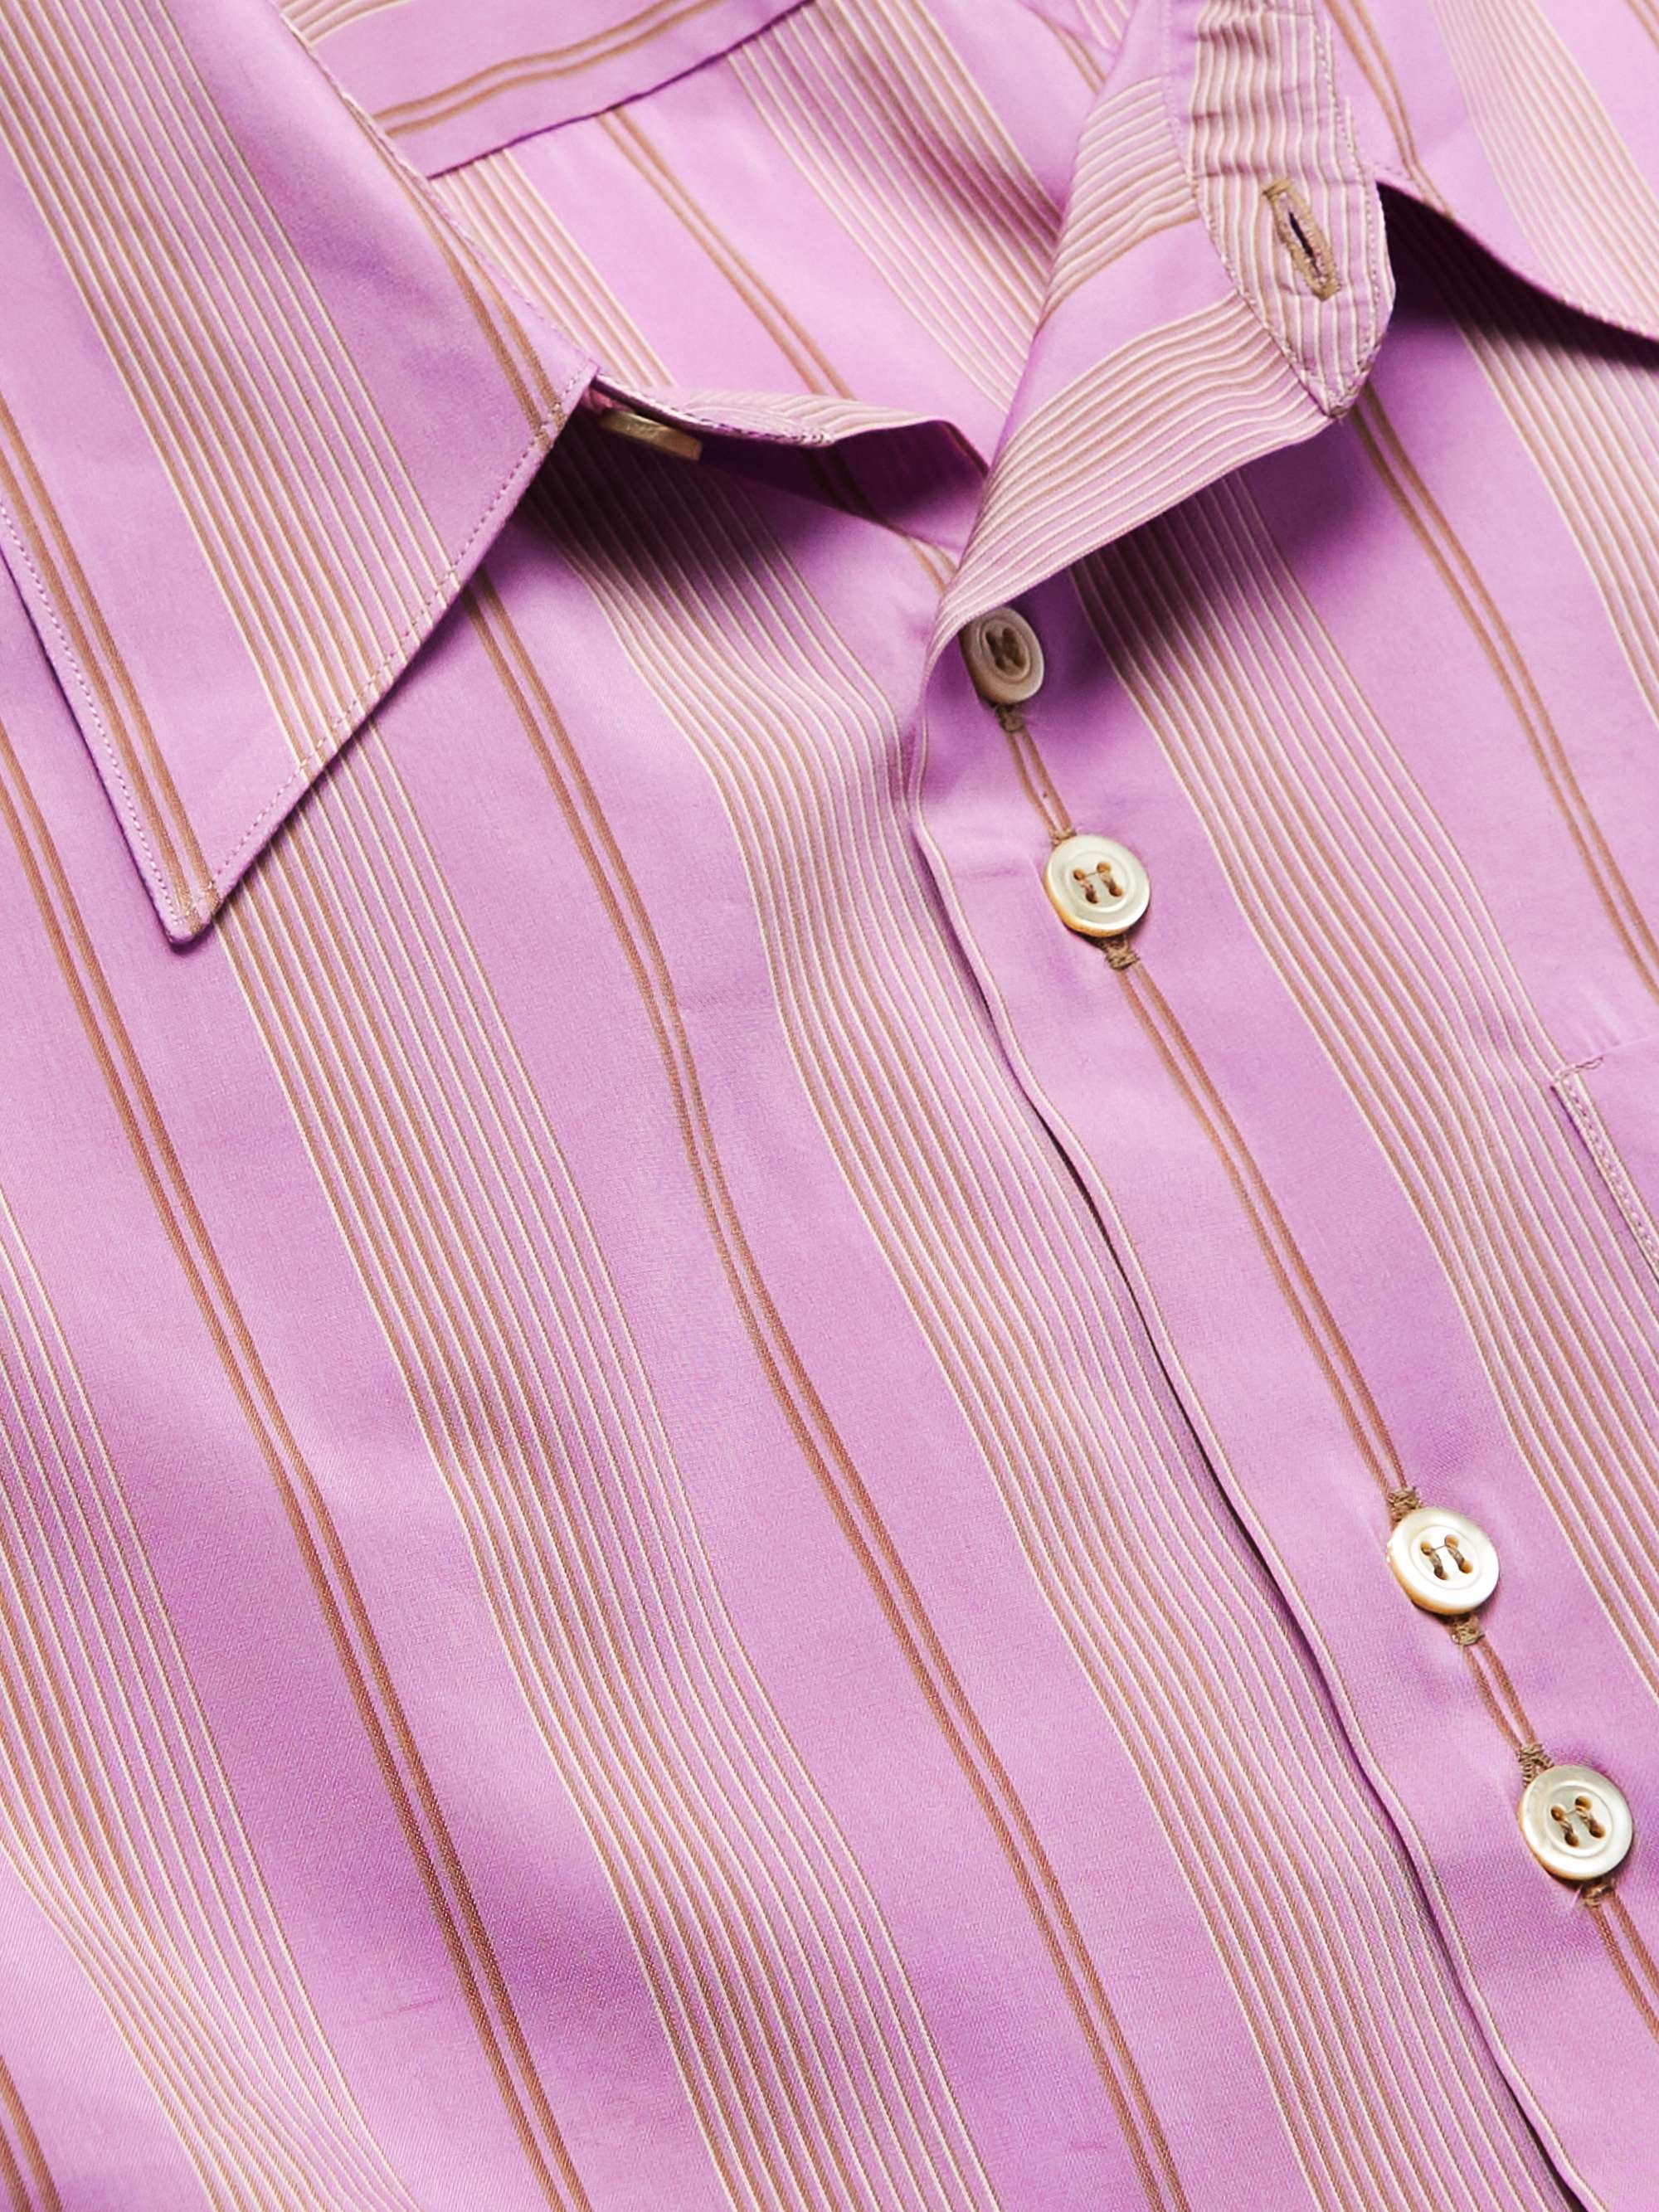 WALES BONNER Stripe Rhythm Striped Cotton-Blend Shirt